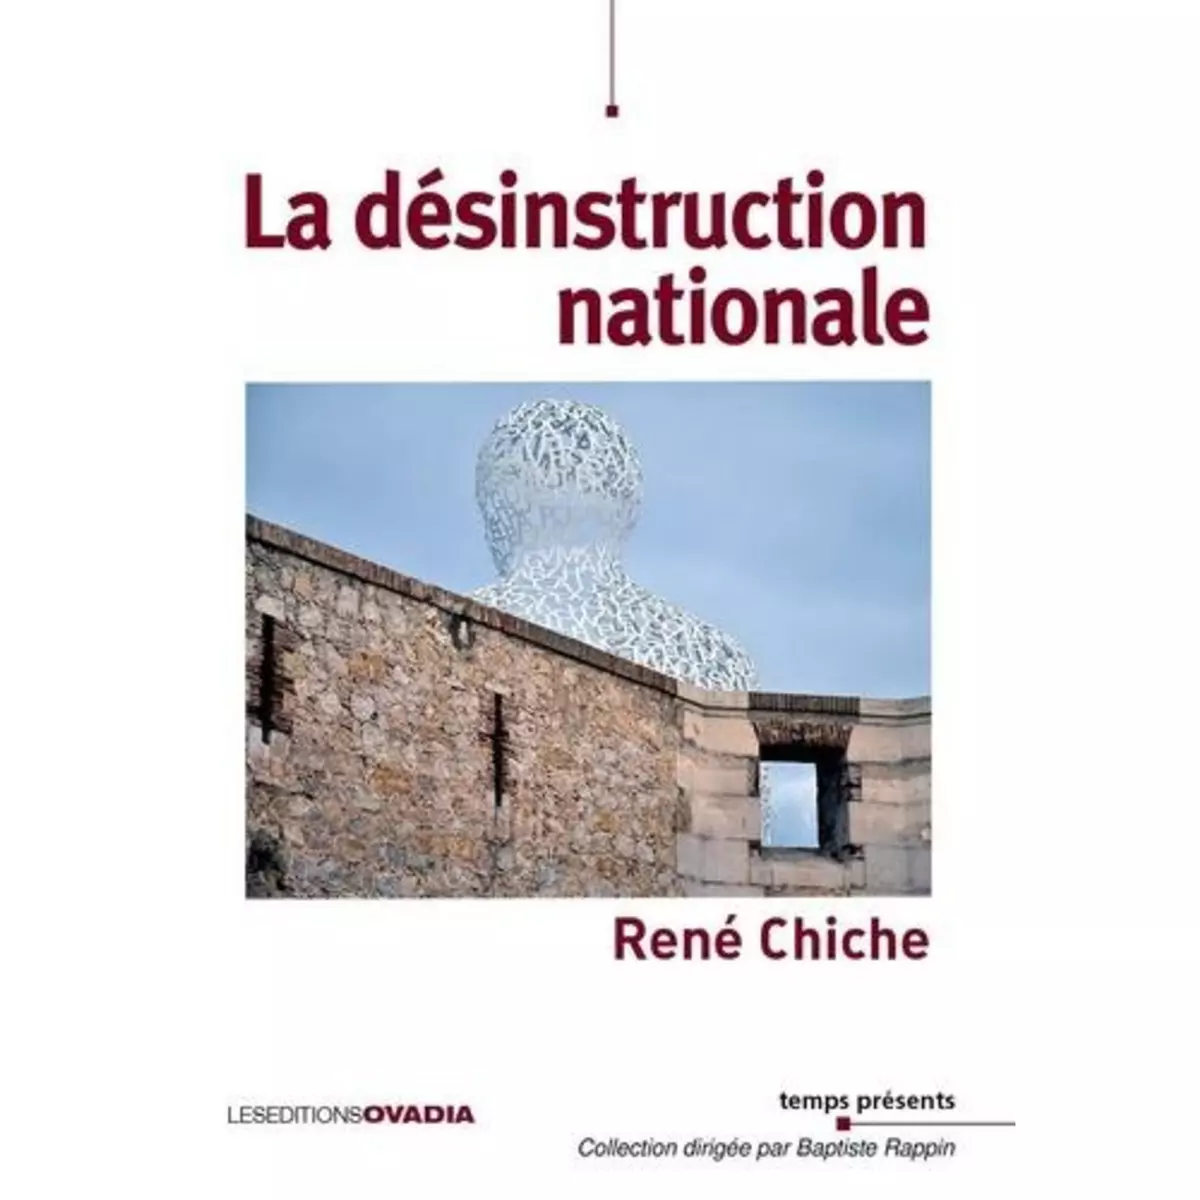  LA DESINSTRUCTION NATIONALE, Chiche René